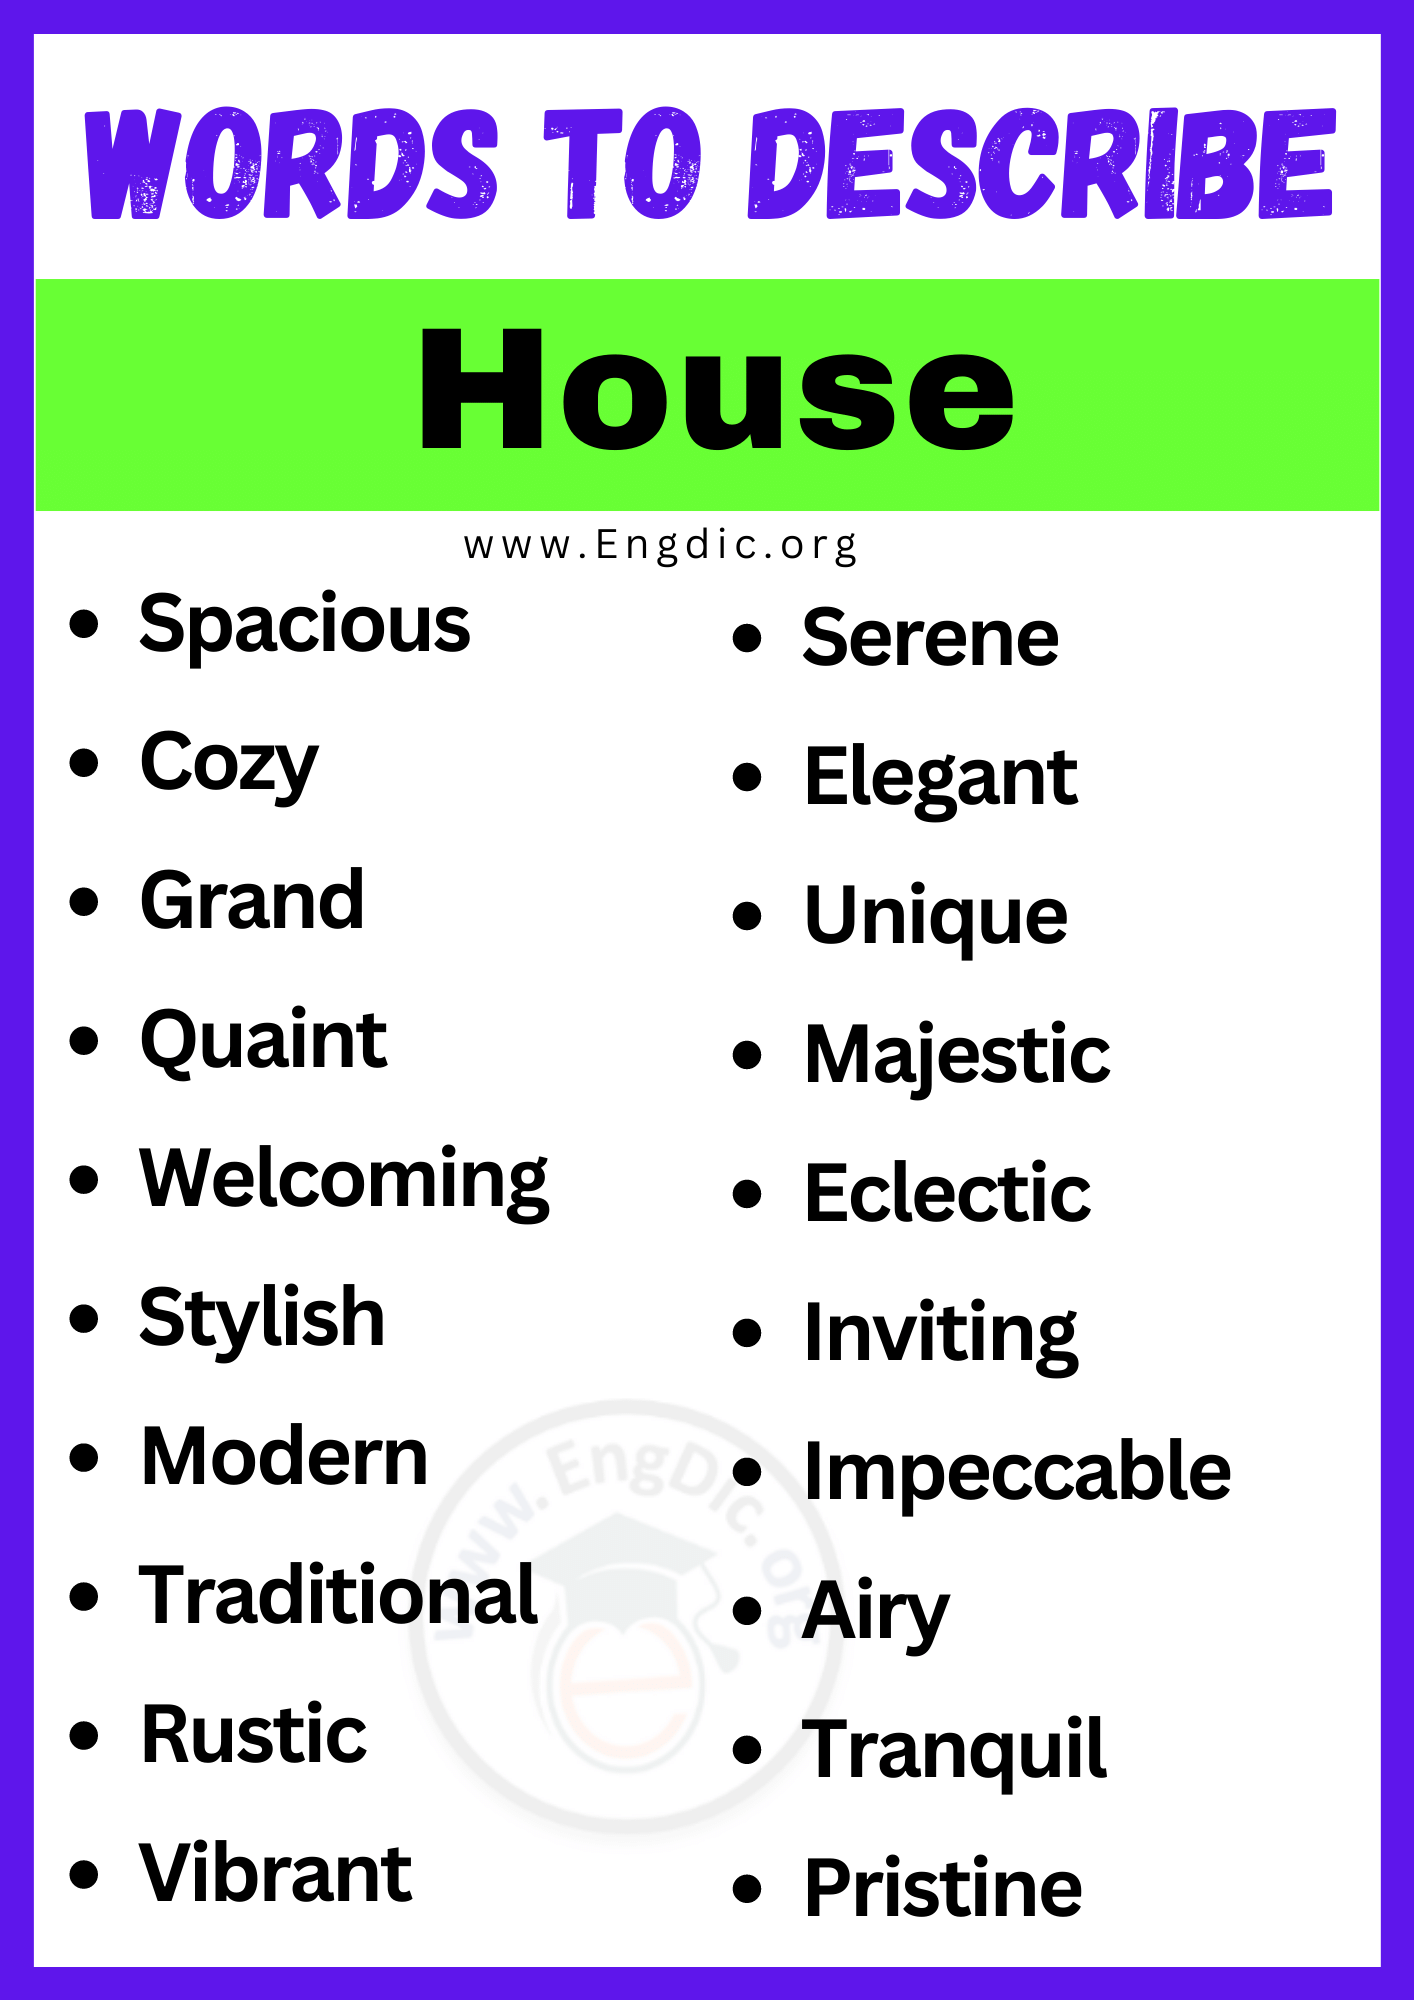 Words to Describe a House